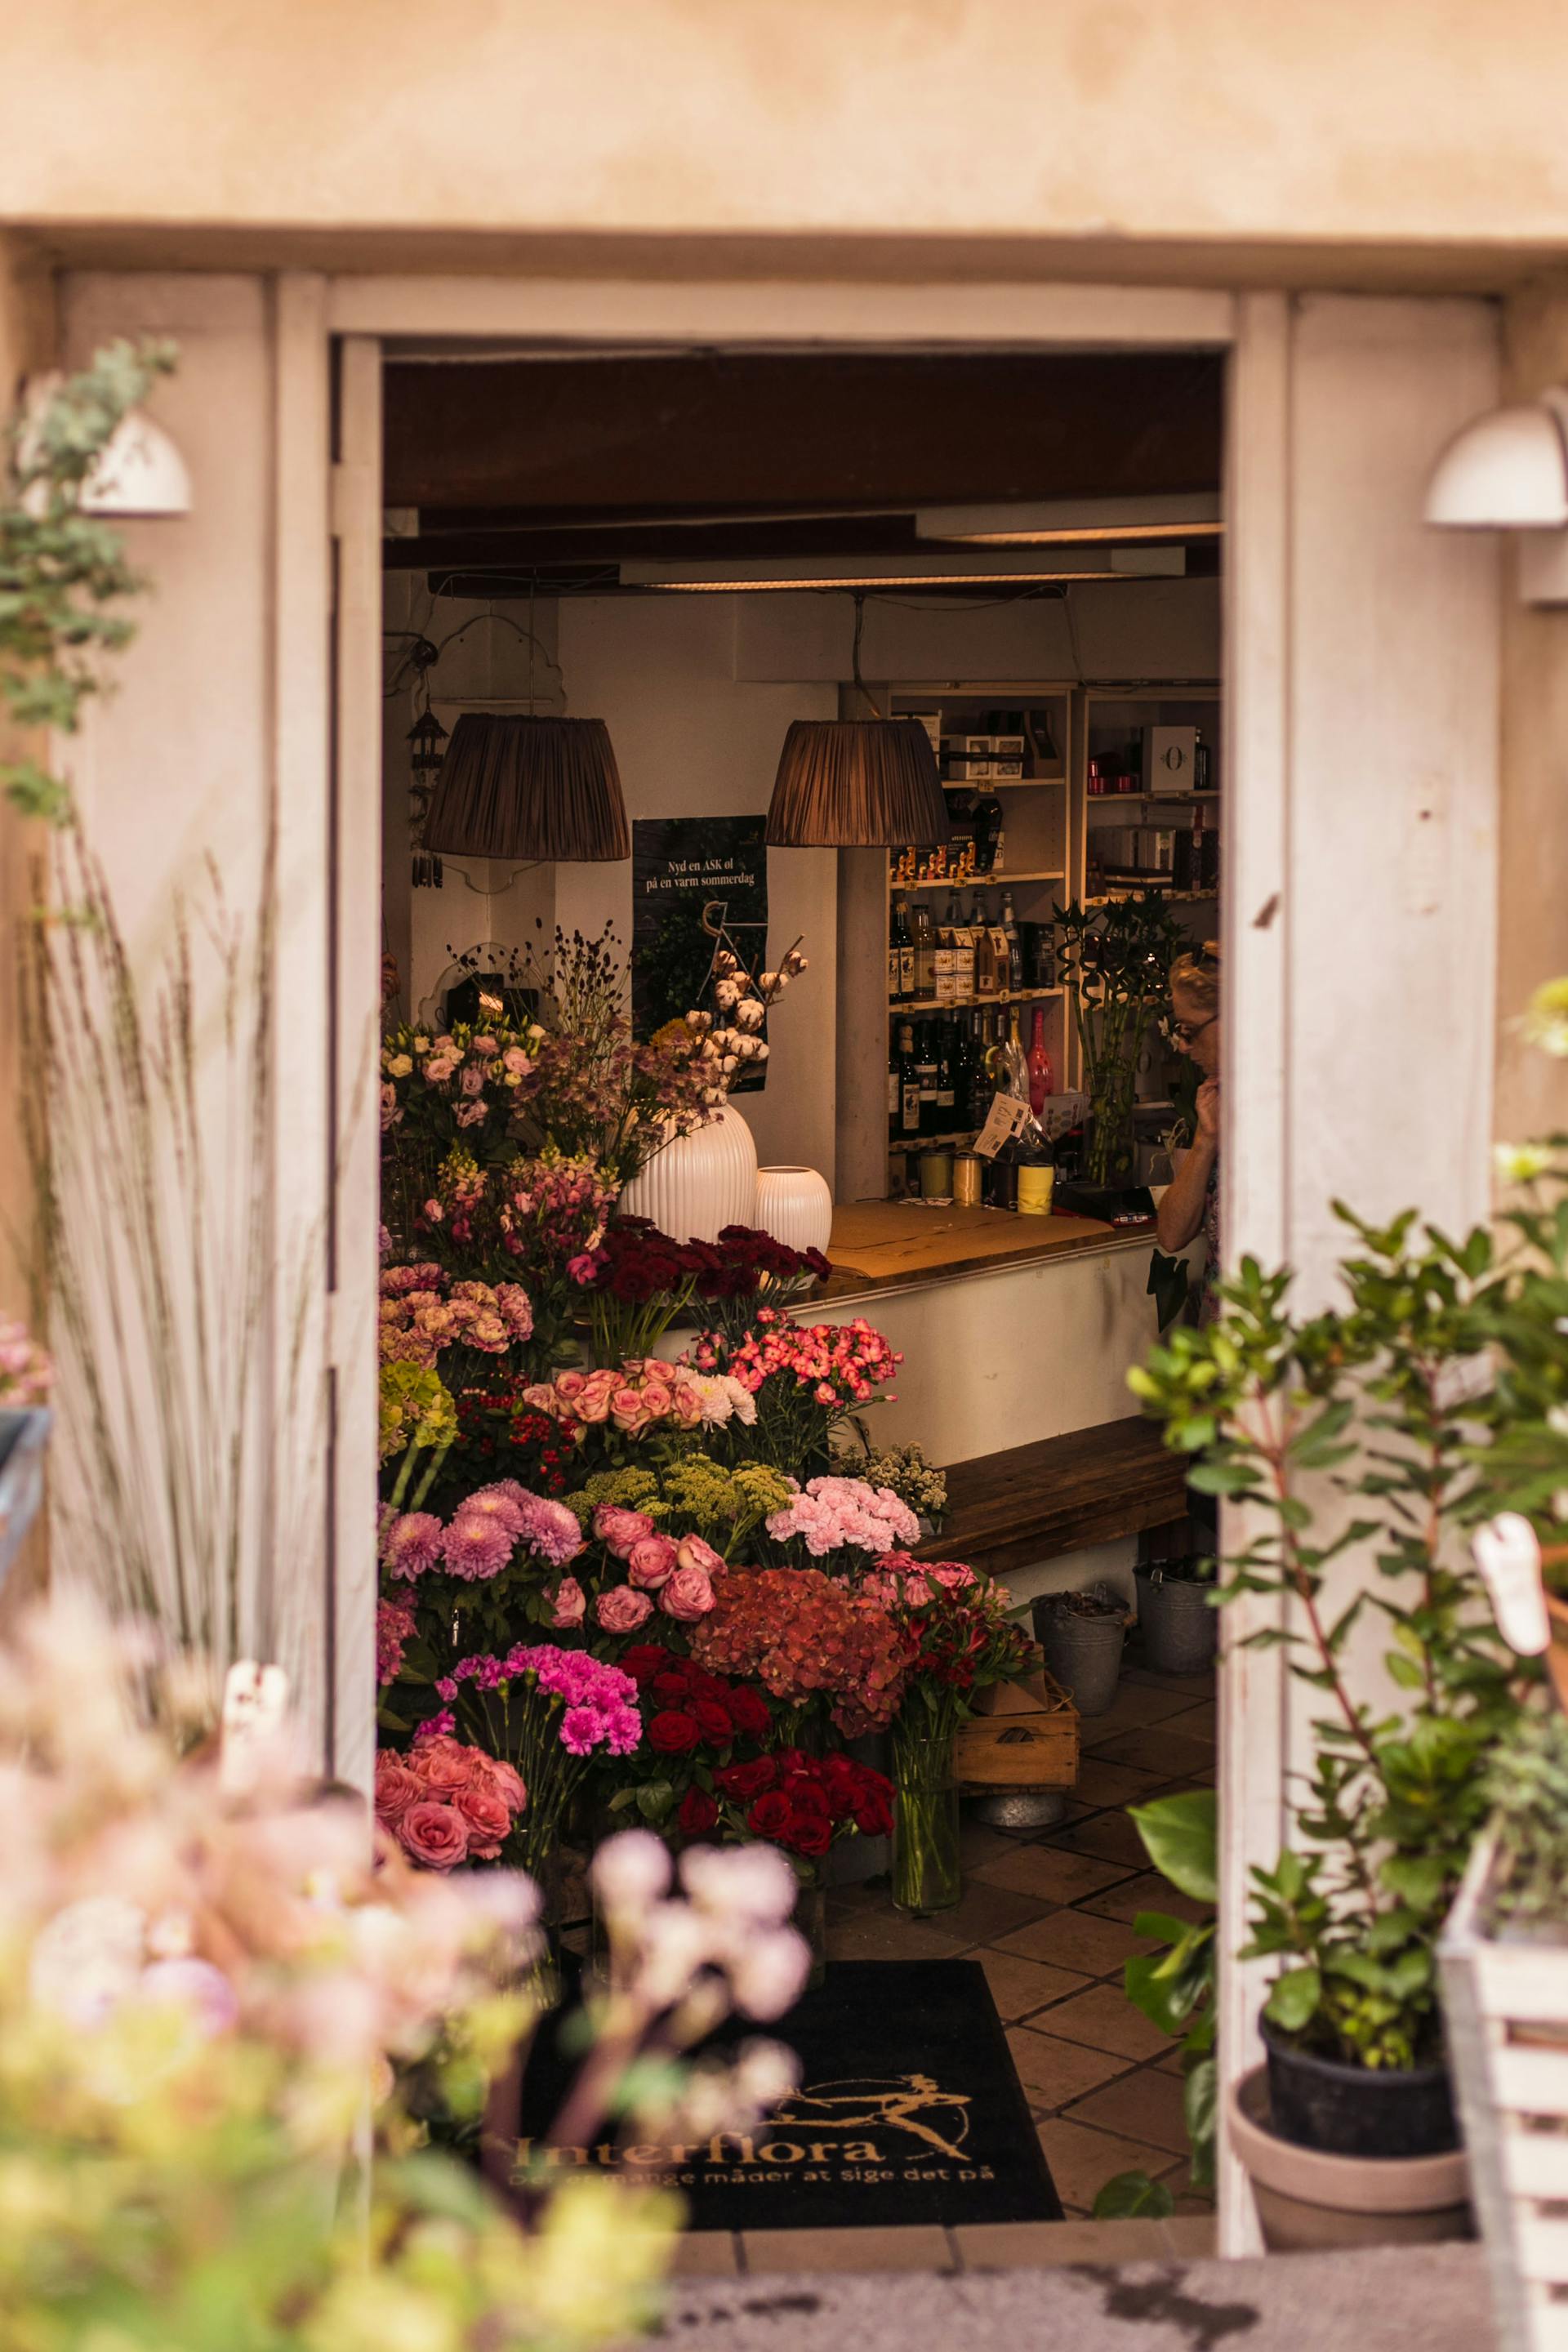 A flower shop exterior | Source: Pexels